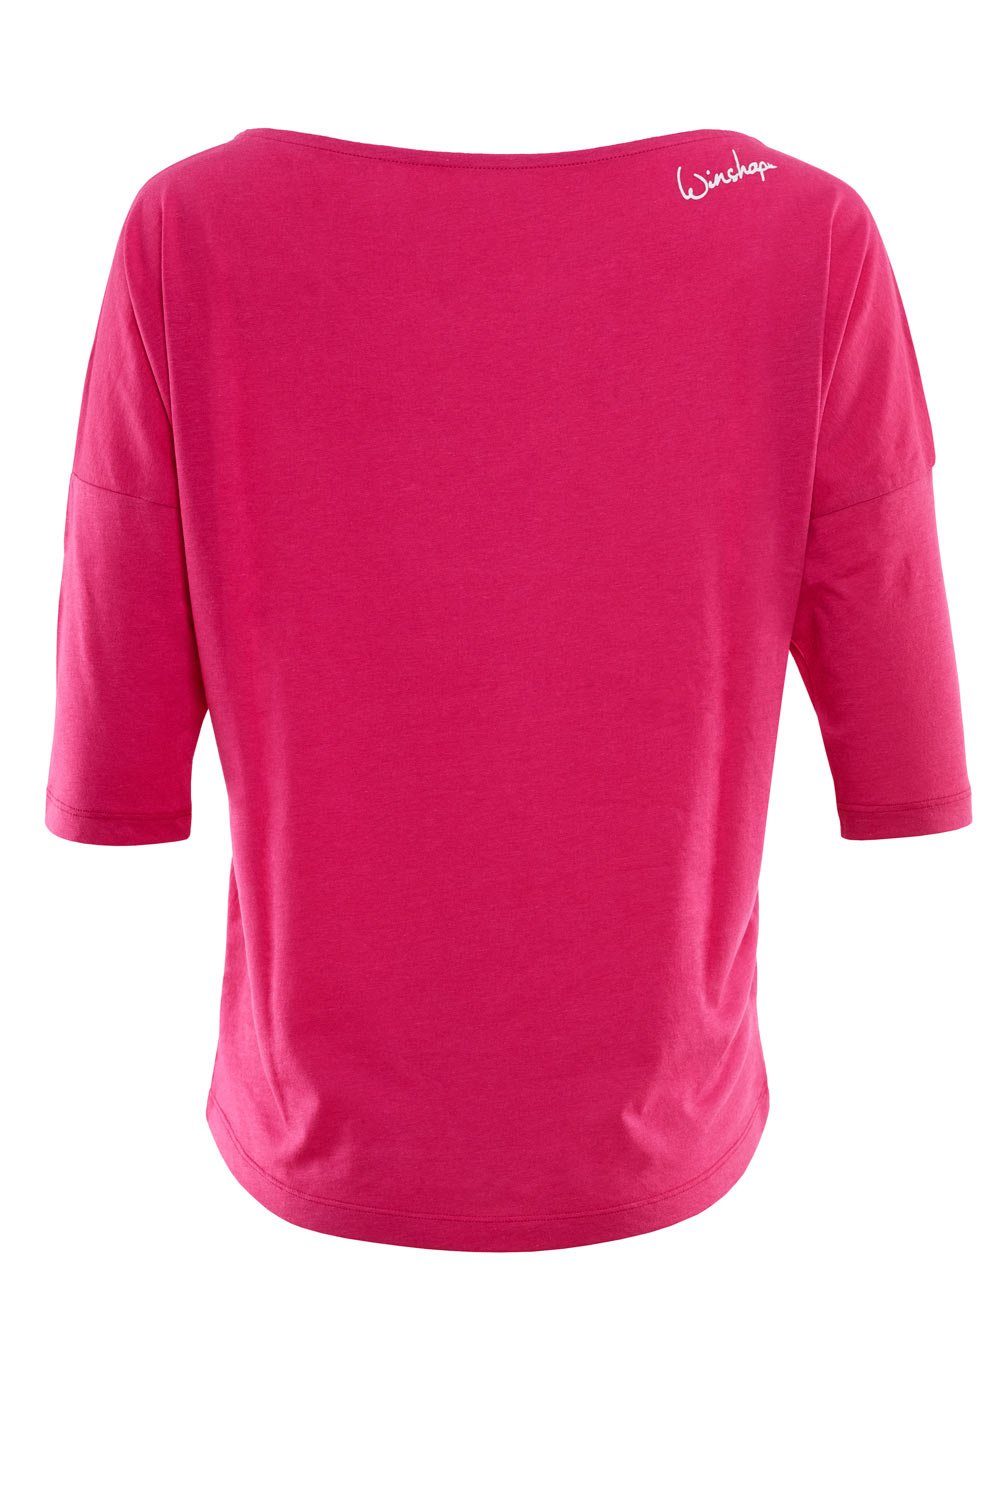 Winshape weiß glitzer weißem pink mit ultra MCS001 - Glitzer-Aufdruck 3/4-Arm-Shirt deep leicht